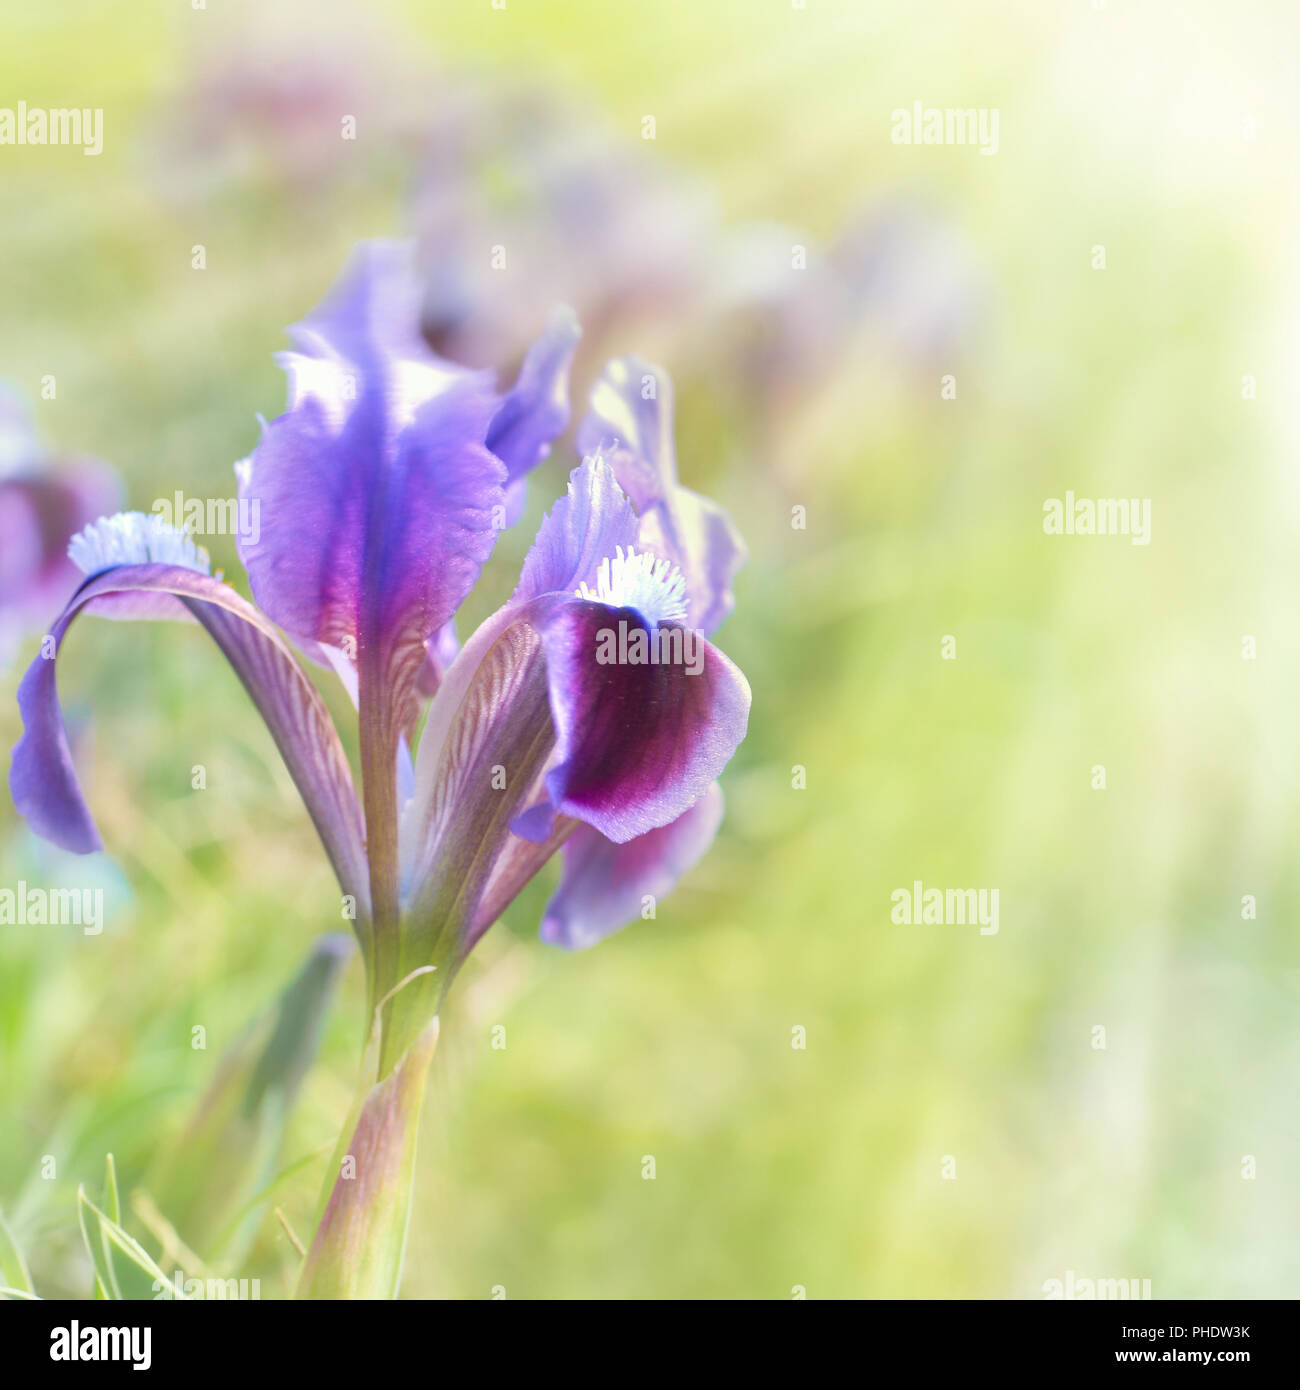 Blume iris auf dem grünen Rasen Stockfoto